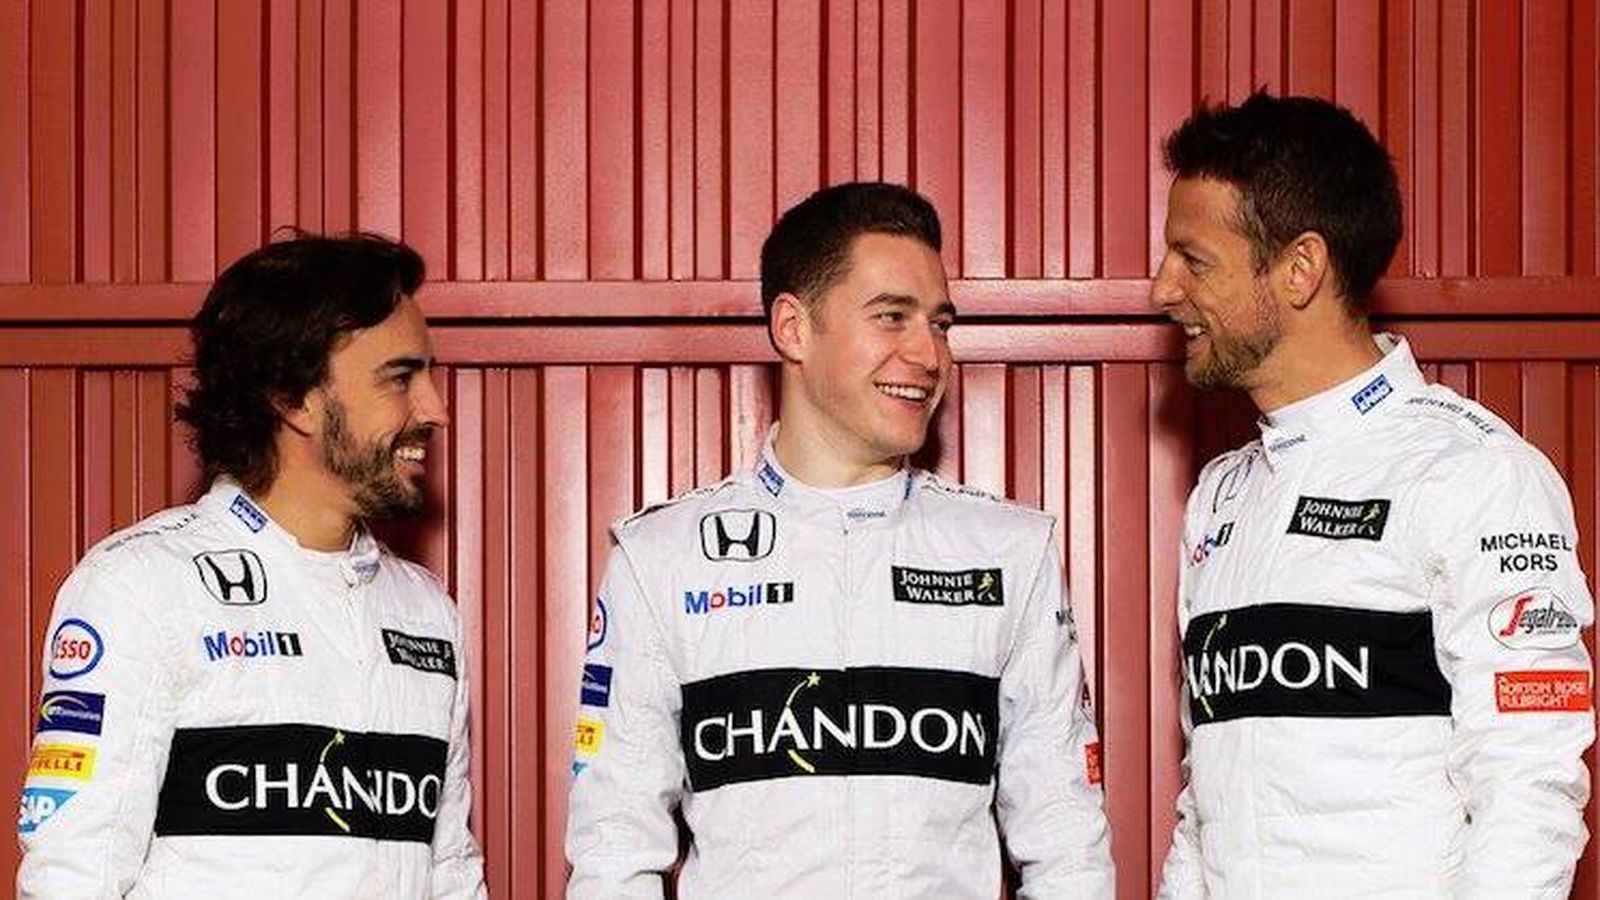 Foto: Los tres pilotos, Alonso Vandoorne y Button.